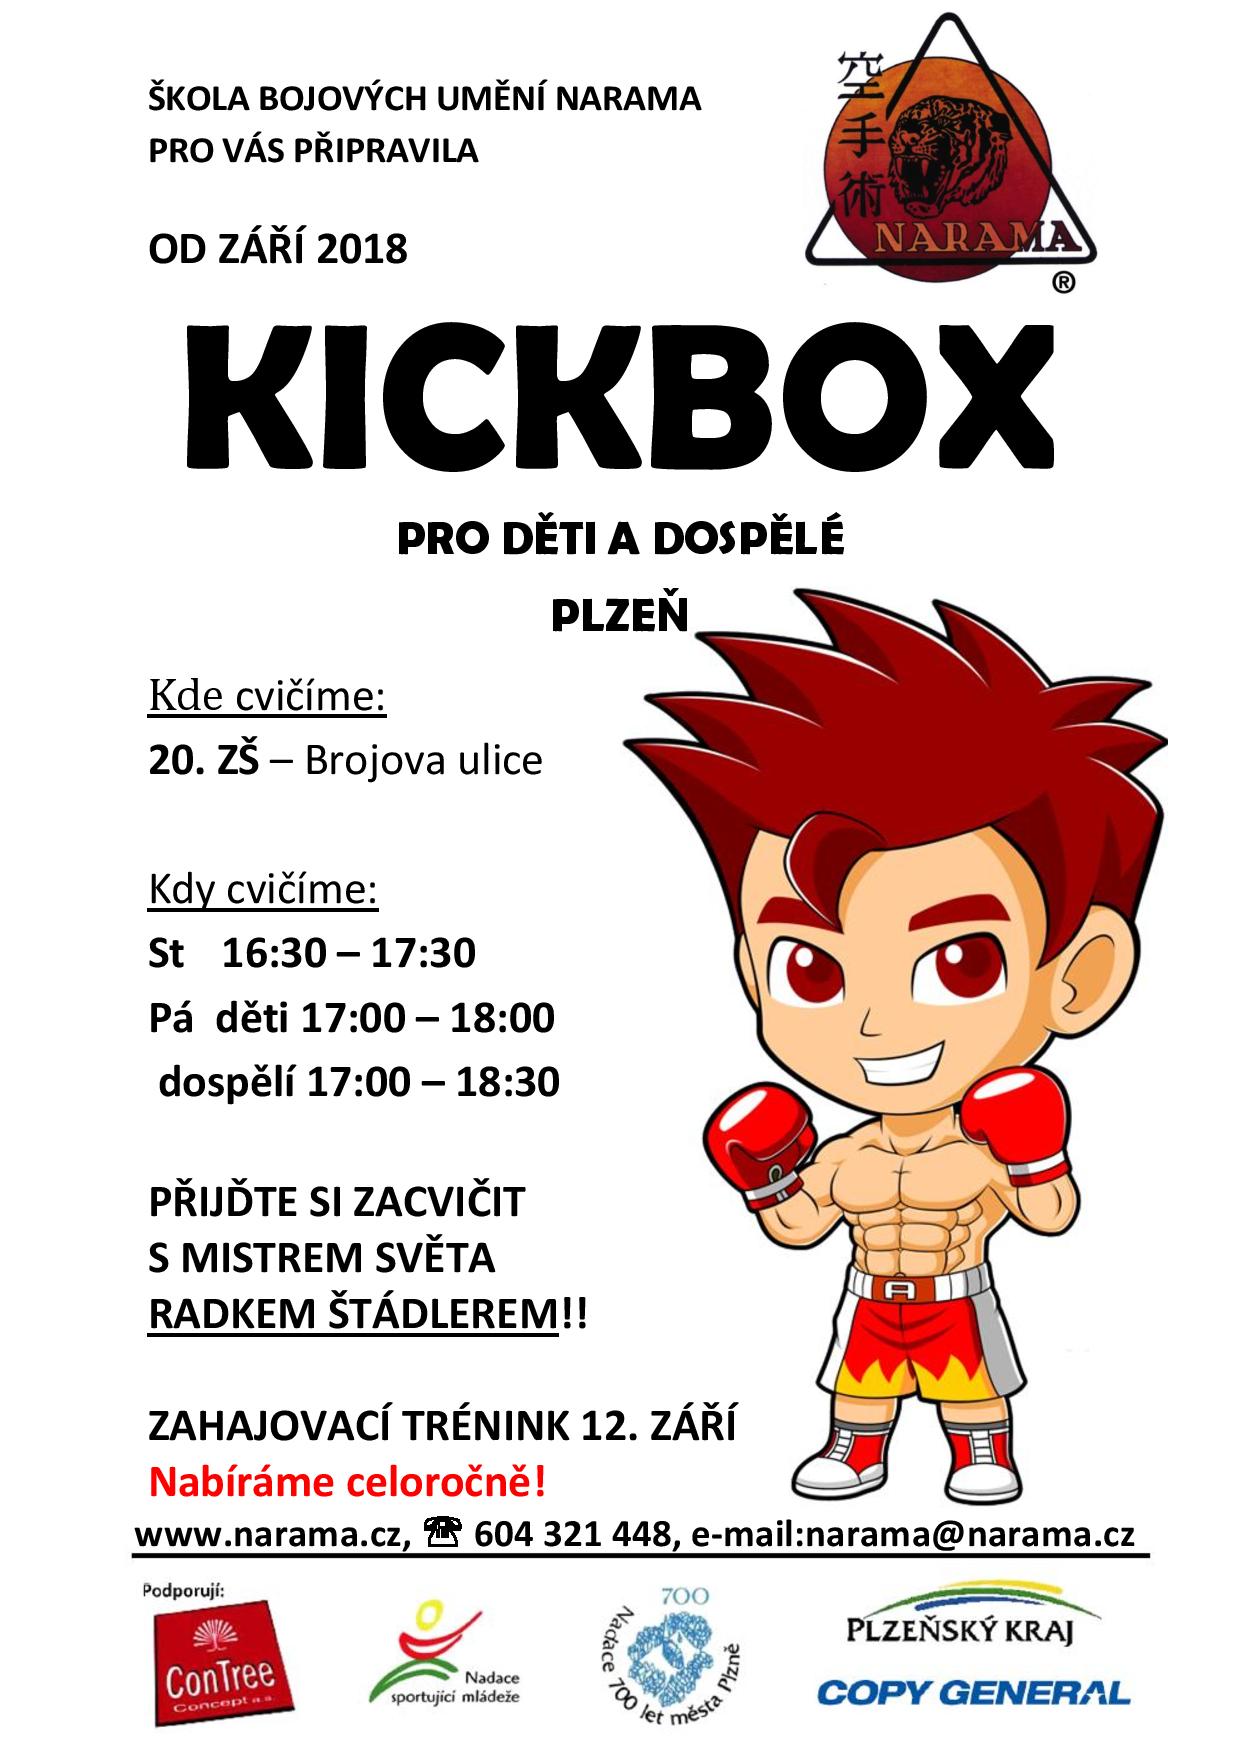 NARAMA - kickbox pro děti a dospělé